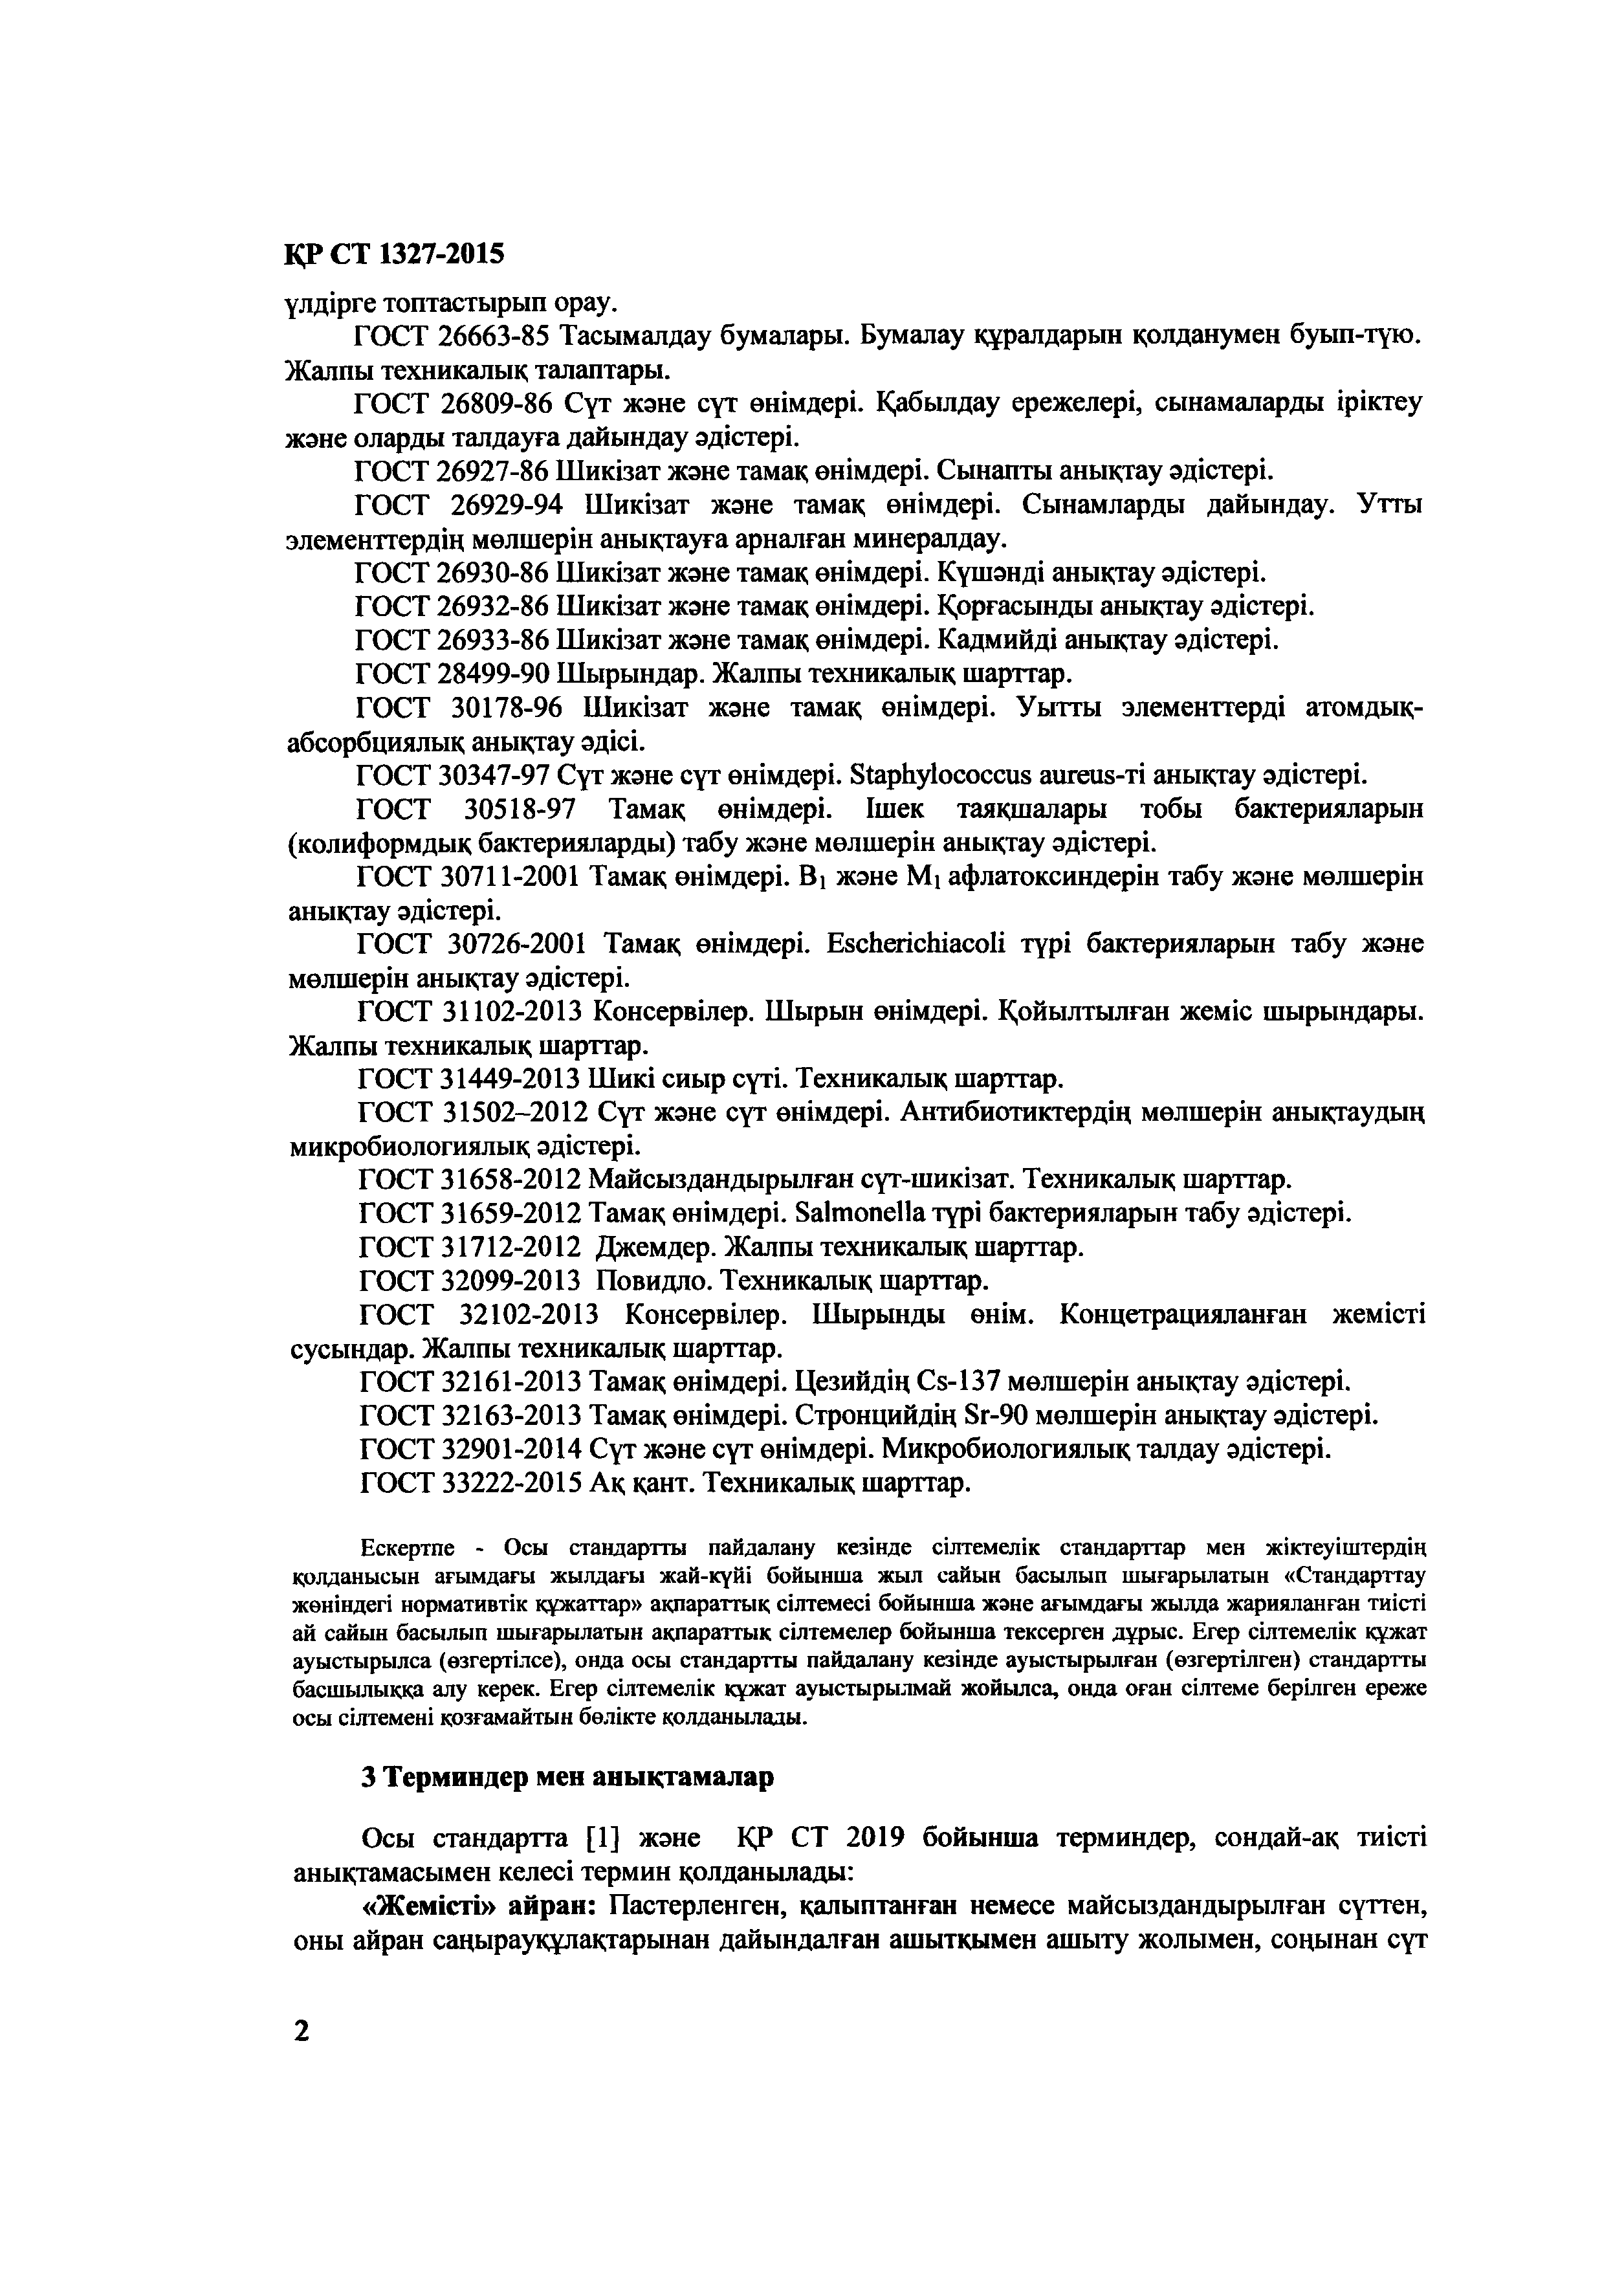 СТ РК 1327-2015